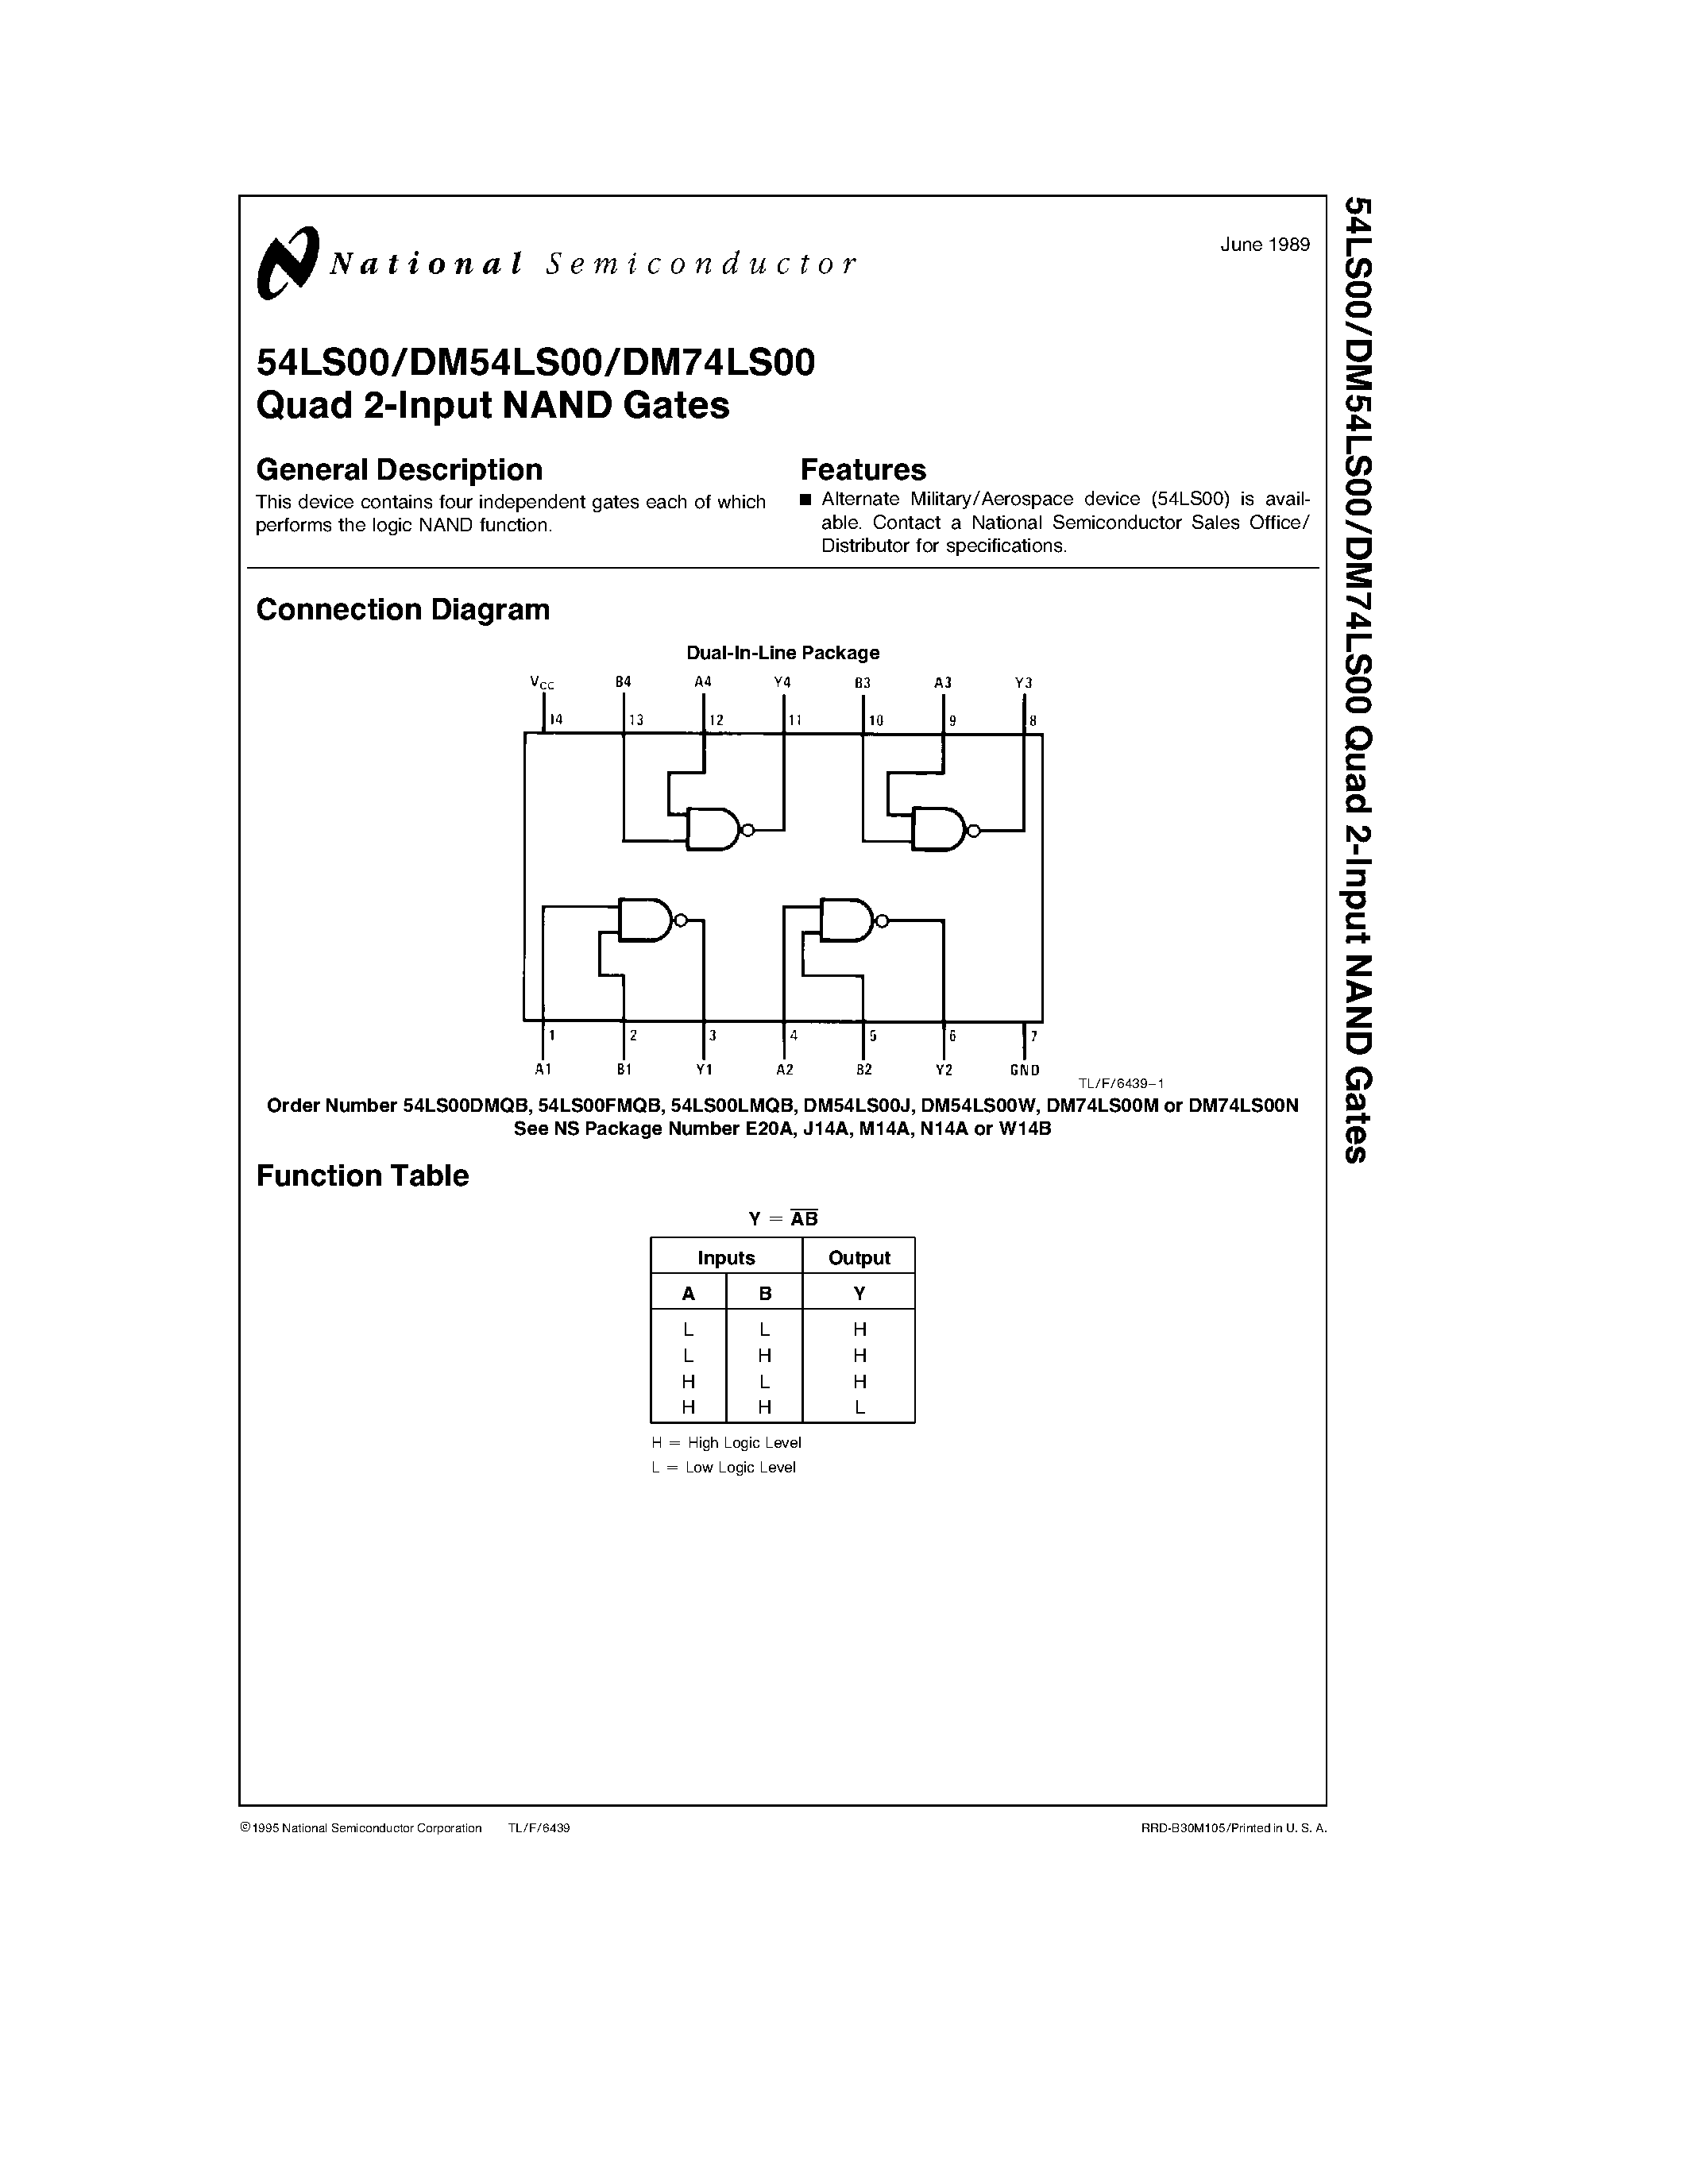 Даташит DM74LS00N - Quad 2-Input NAND Gates страница 1